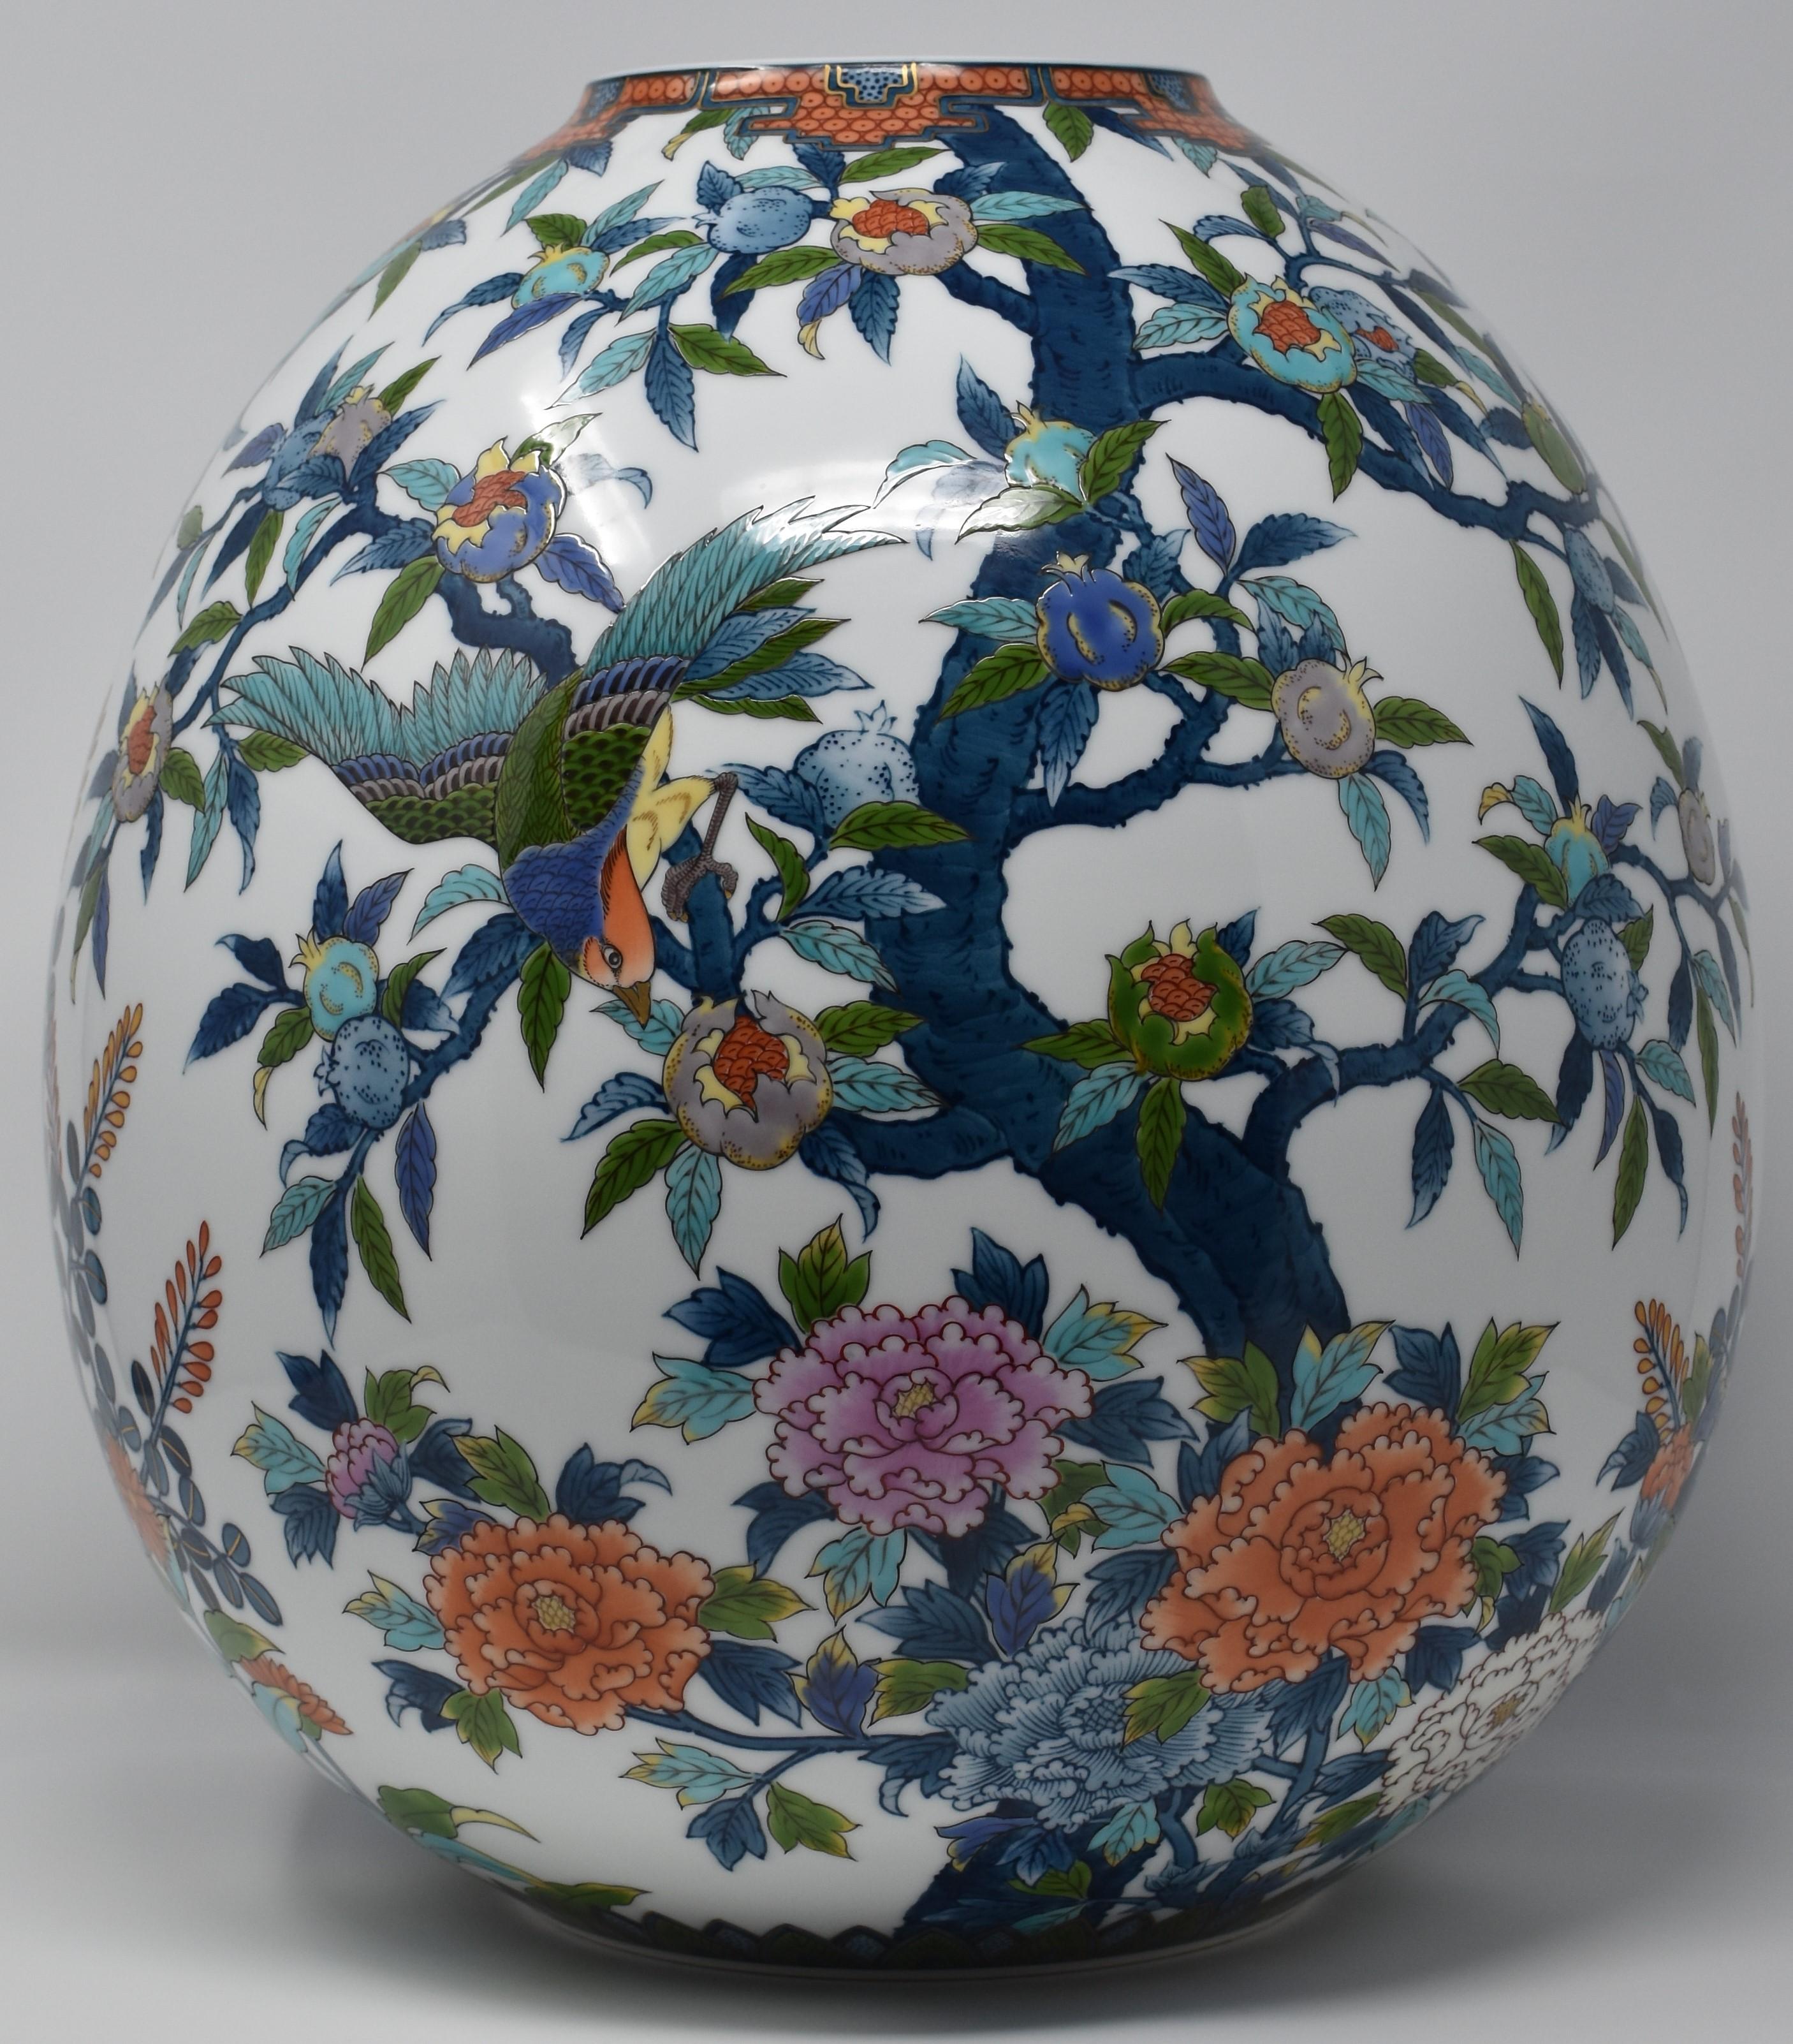  Contempory Imari Large Japanese Decorative Porcelain Vase by Master Artist 9